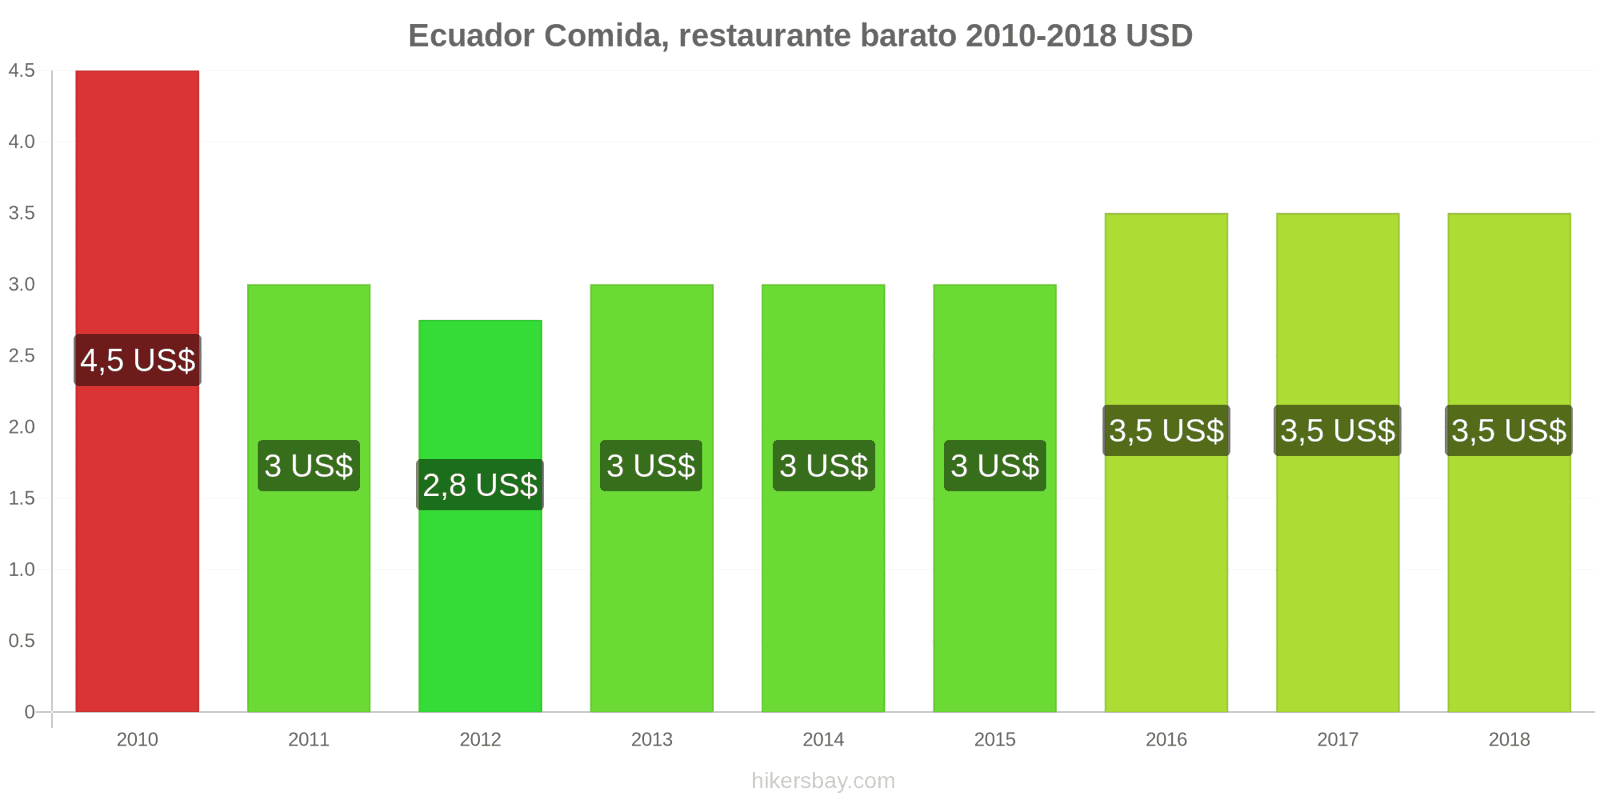 Ecuador cambios de precios Comida en un restaurante económico hikersbay.com